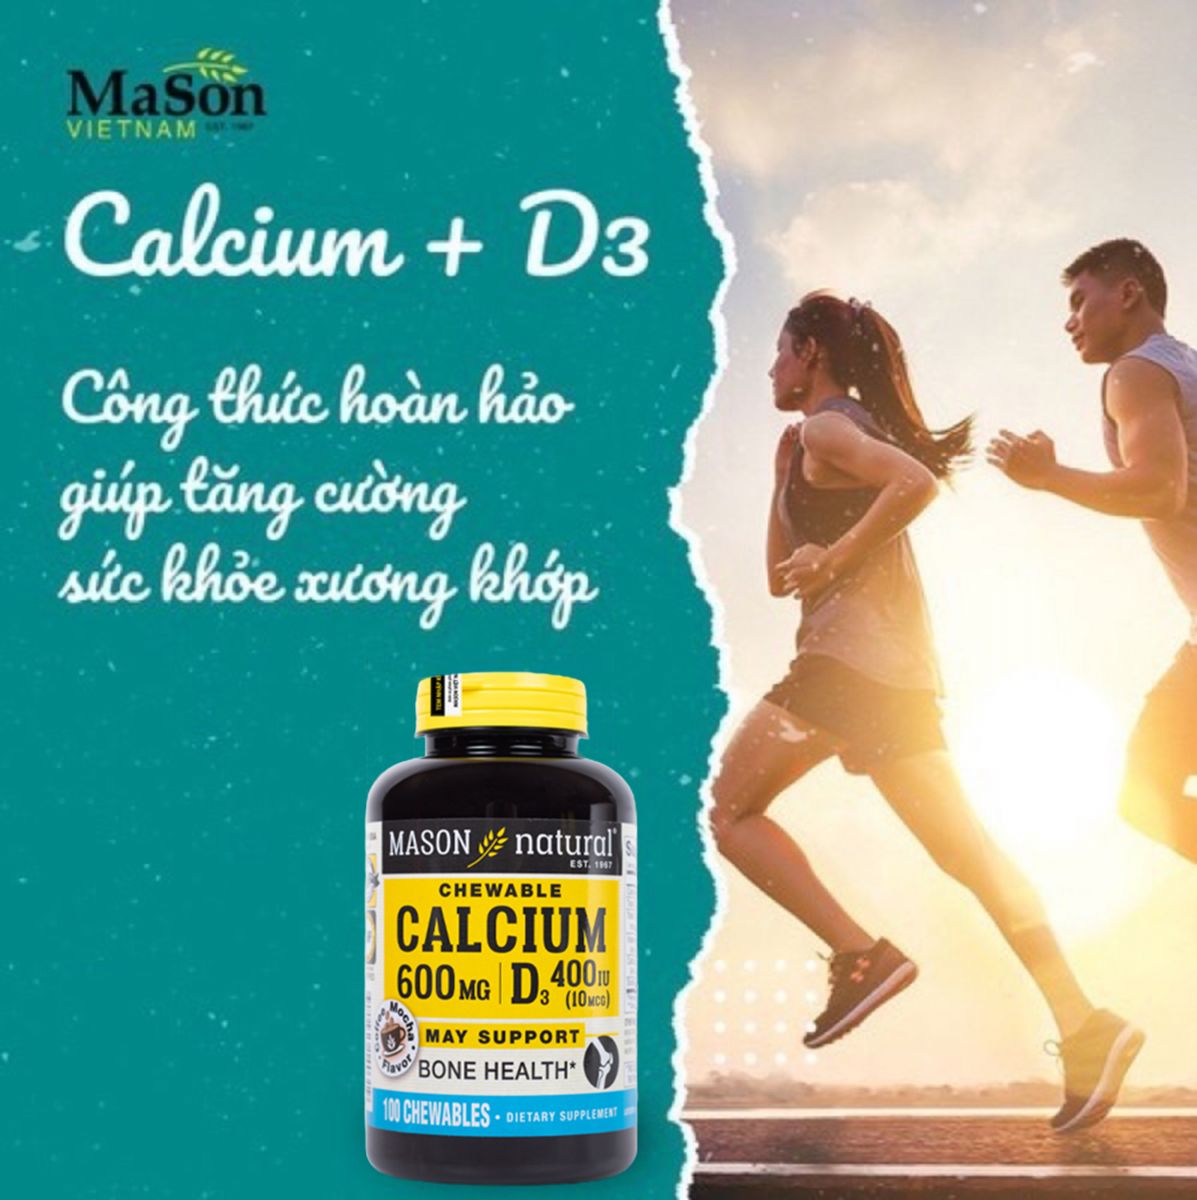 Calcium 600mg + D3 (coffee mocha flavore) – Hỗ trợ sức khỏe xương khớp